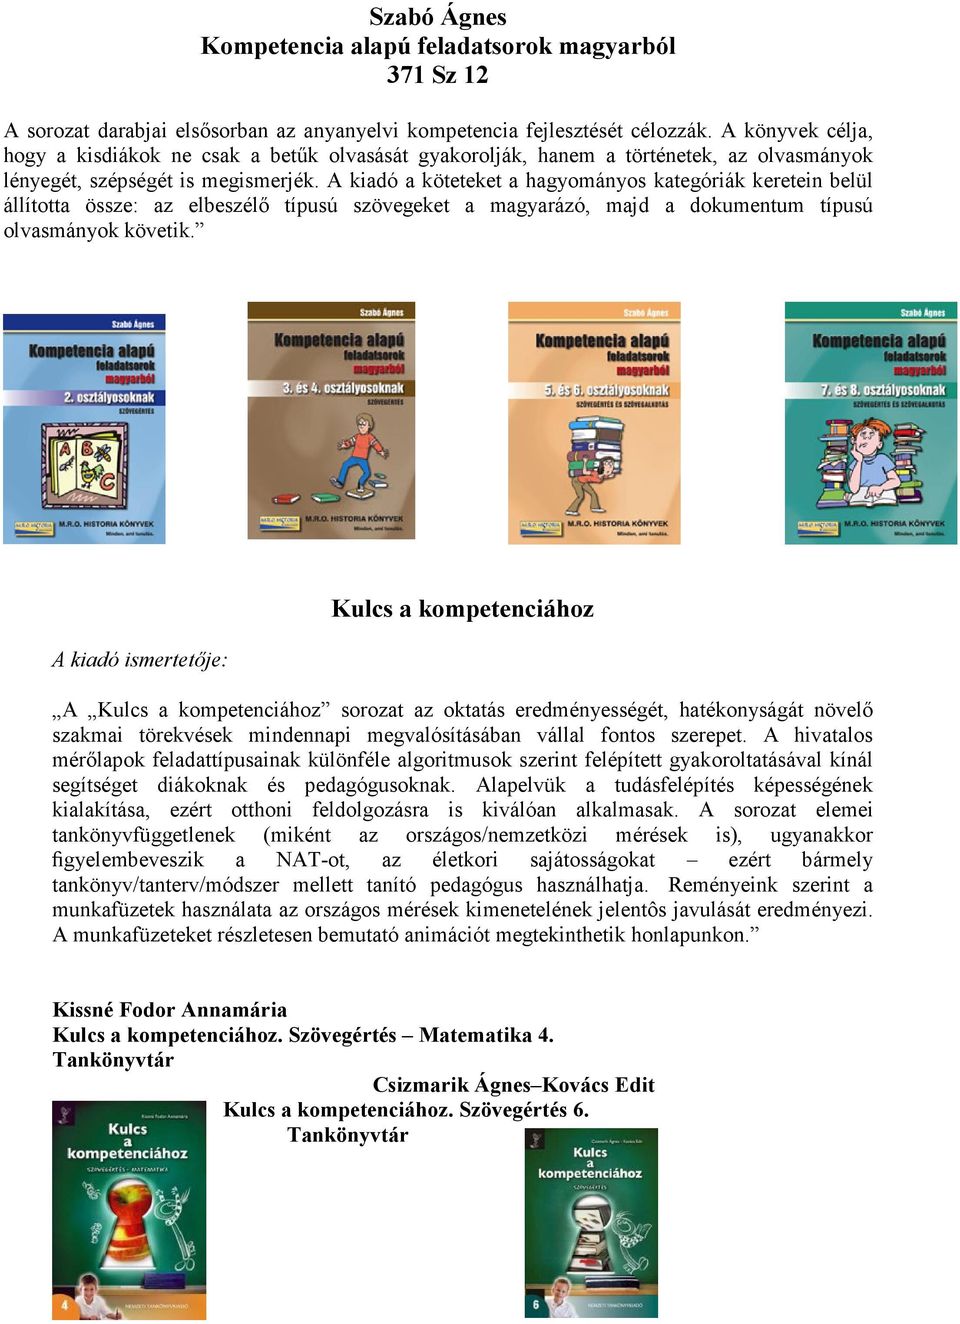 A kiadó a köteteket a hagyományos kategóriák keretein belül állította össze: az elbeszélı típusú szövegeket a magyarázó, majd a dokumentum típusú olvasmányok követik.